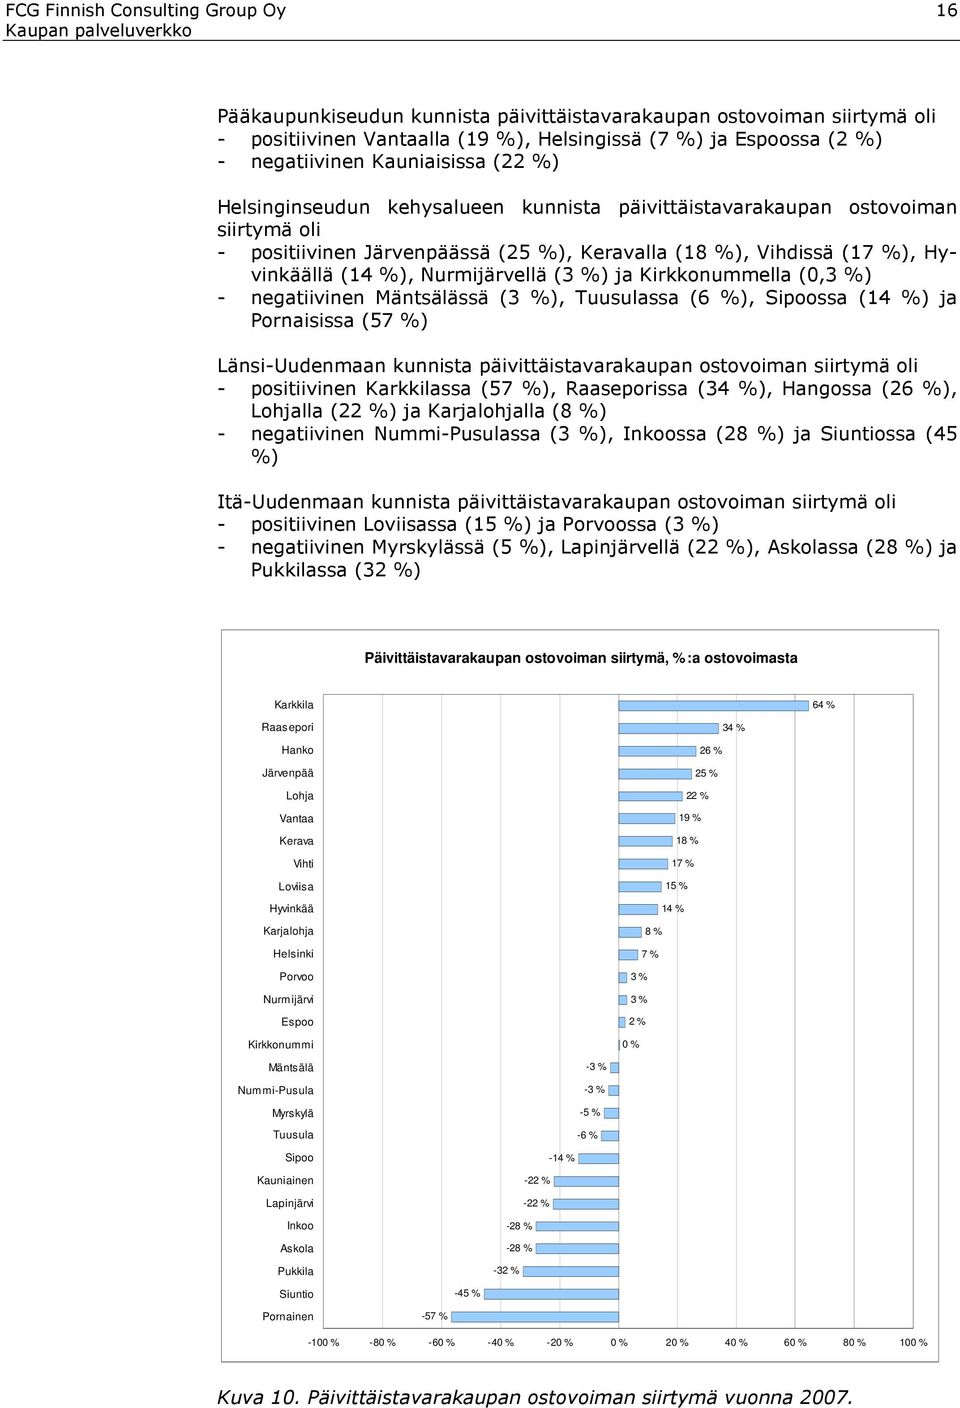 Nurmijärvellä (3 %) ja Kirkkonummella (0,3 %) - negatiivinen Mäntsälässä (3 %), Tuusulassa (6 %), Sipoossa (14 %) ja Pornaisissa (57 %) Länsi-Uudenmaan kunnista päivittäistavarakaupan ostovoiman